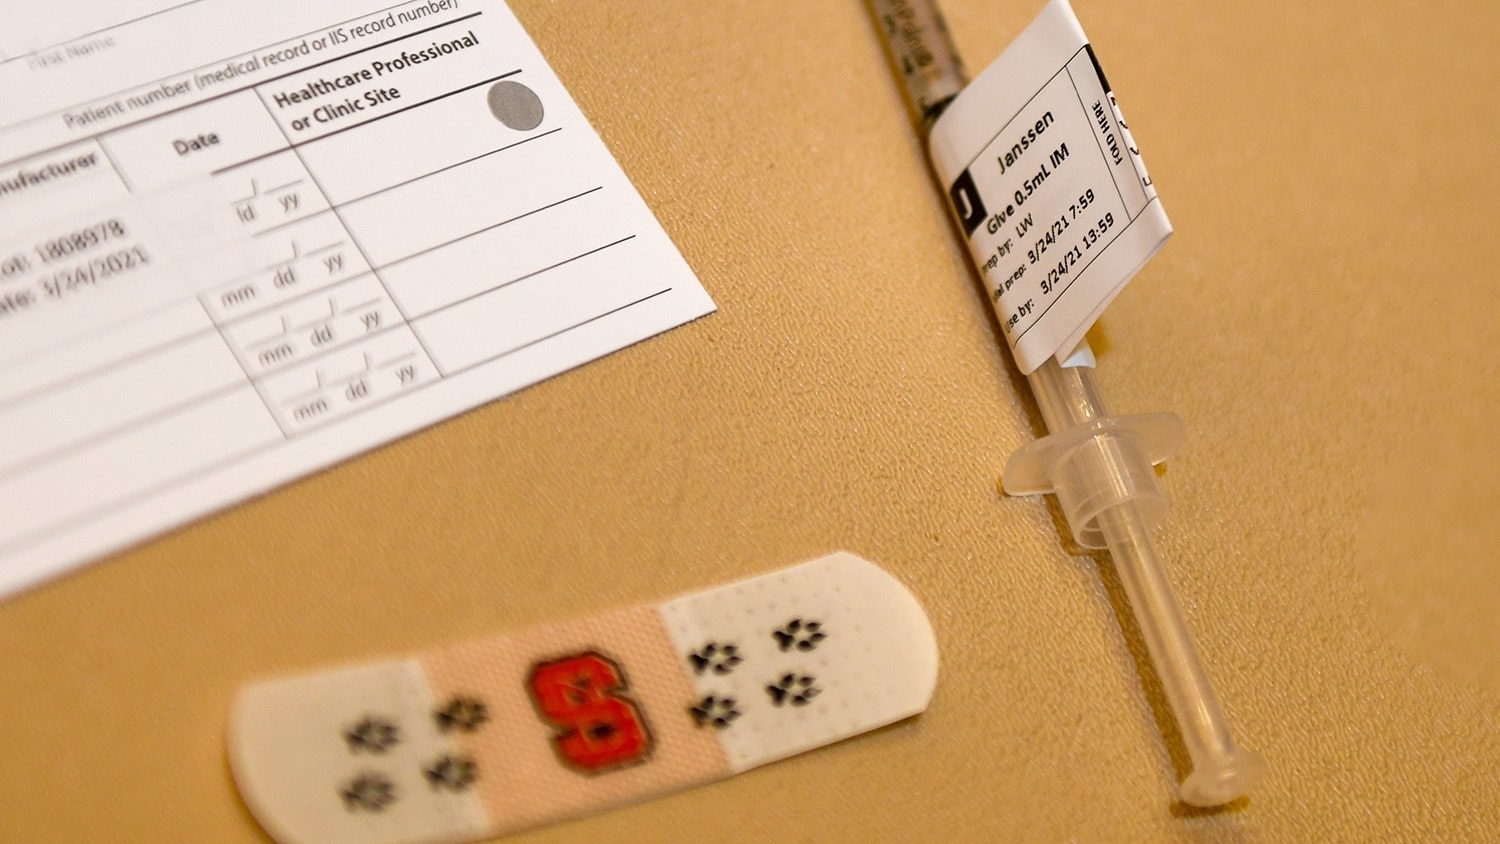 疫苗卡，NC状态品牌绷带和包含Janssen疫苗的注射器